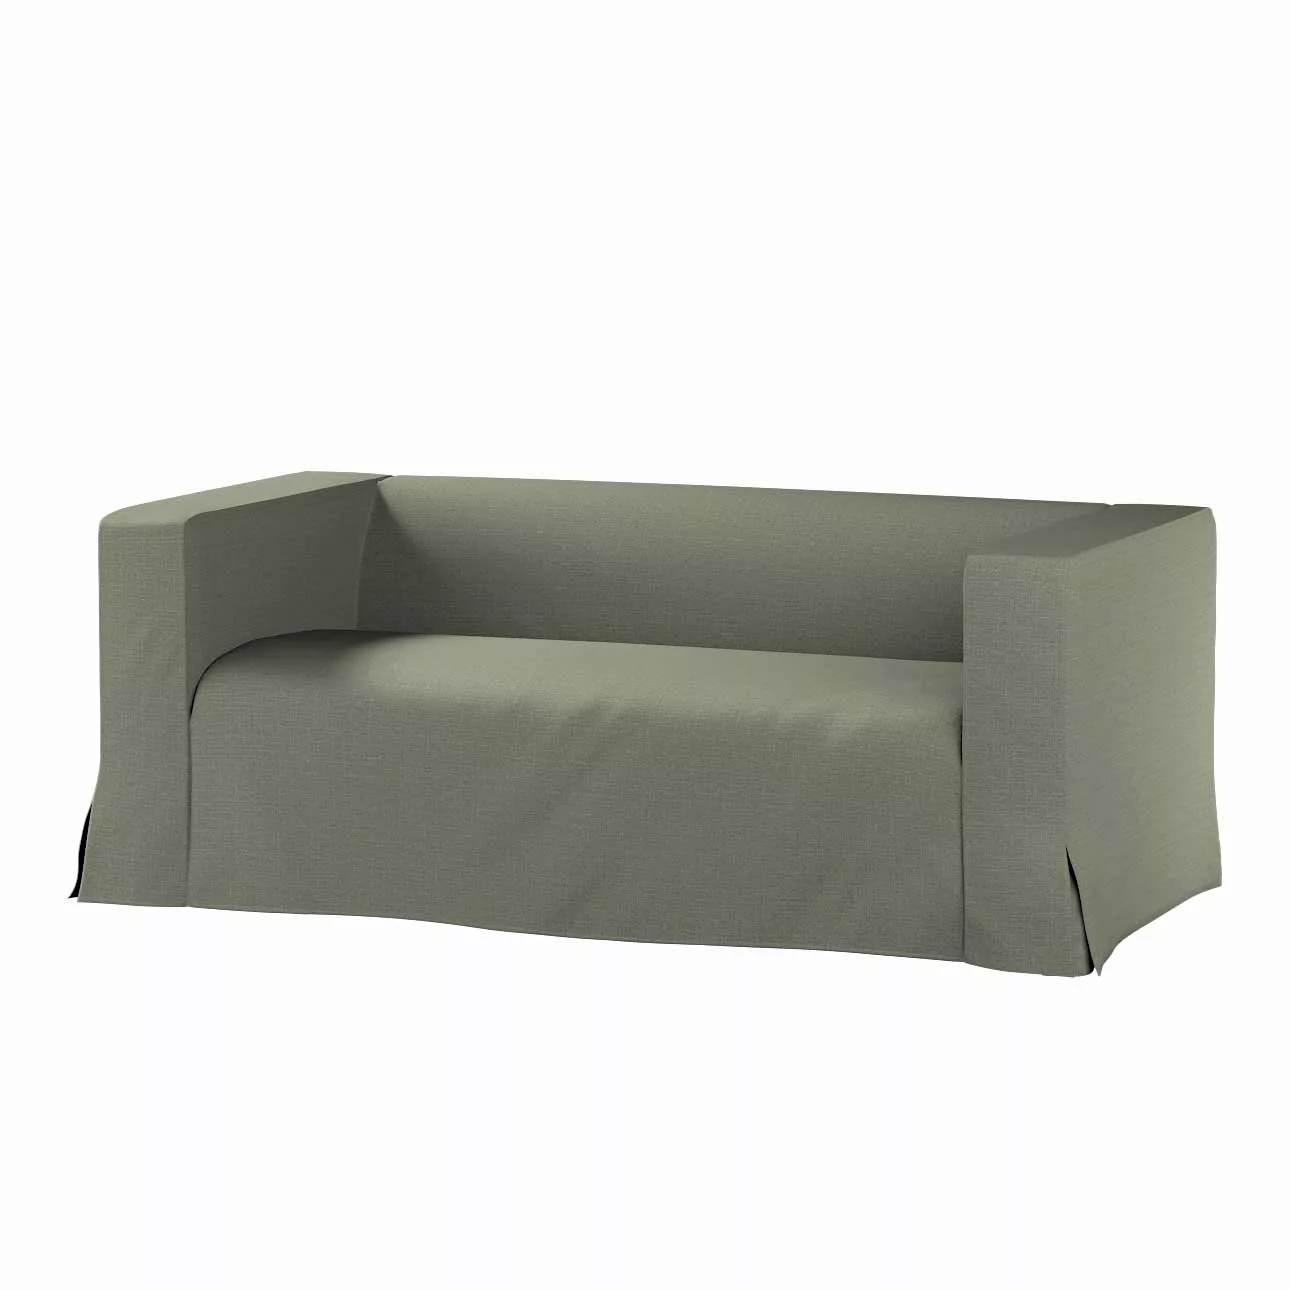 Bezug für Klippan 2-Sitzer Sofa, lang mit Kellerfalte, khaki, Klippan 2-er, günstig online kaufen